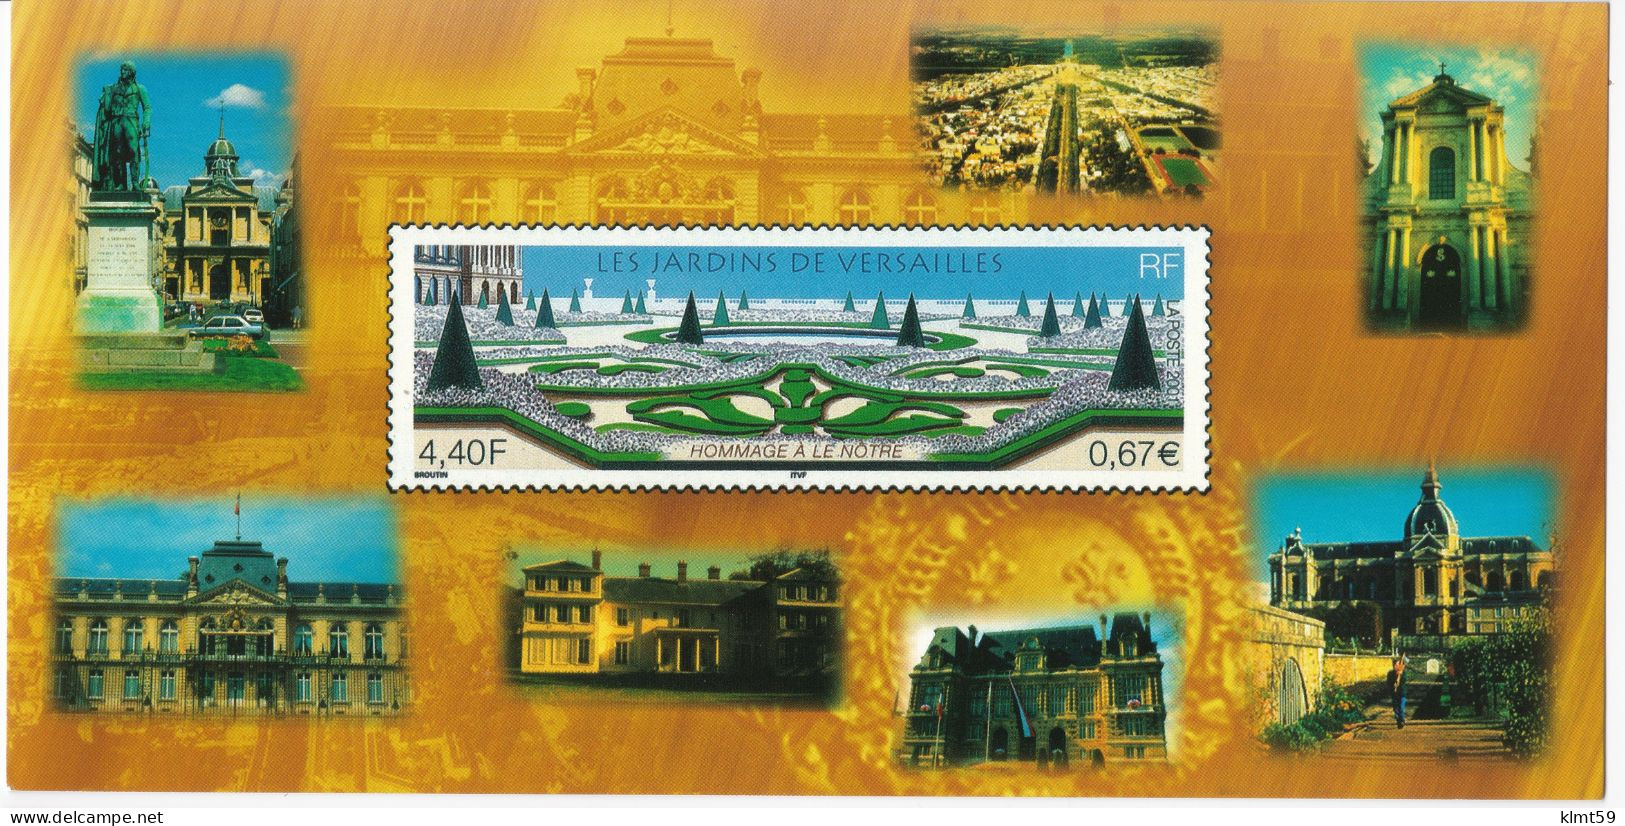 Carte Timbre "Les Jardins De Versailles" élu "Timbre De L'année 2001" Par Les Philatélistes - Timbres (représentations)